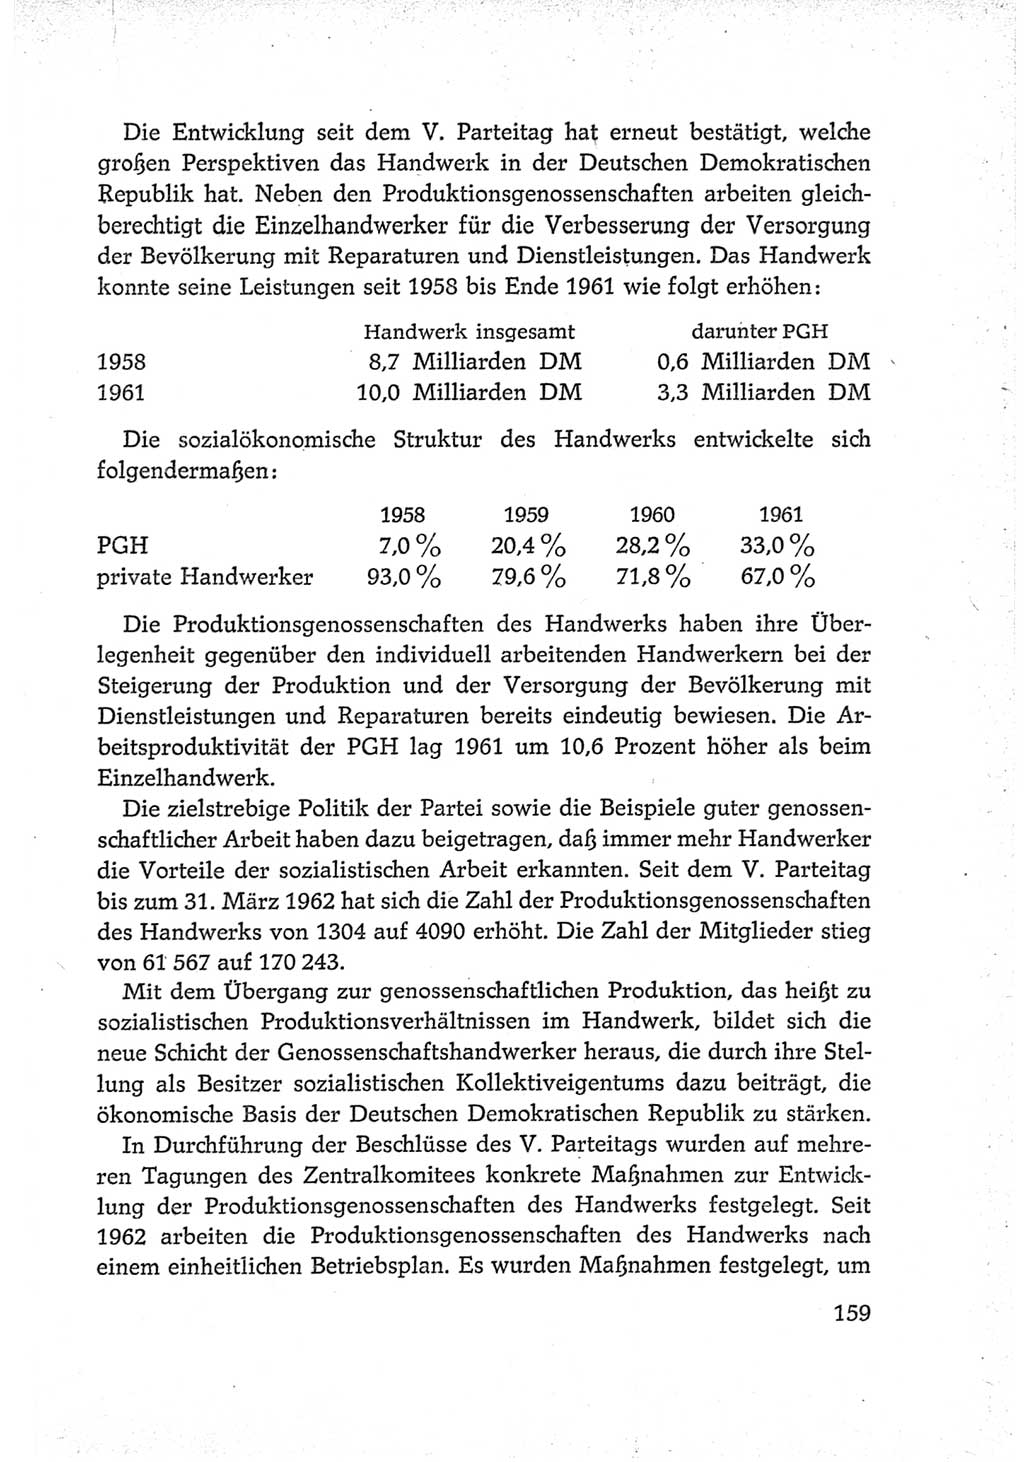 Protokoll der Verhandlungen des Ⅵ. Parteitages der Sozialistischen Einheitspartei Deutschlands (SED) [Deutsche Demokratische Republik (DDR)] 1963, Band Ⅳ, Seite 159 (Prot. Verh. Ⅵ. PT SED DDR 1963, Bd. Ⅳ, S. 159)